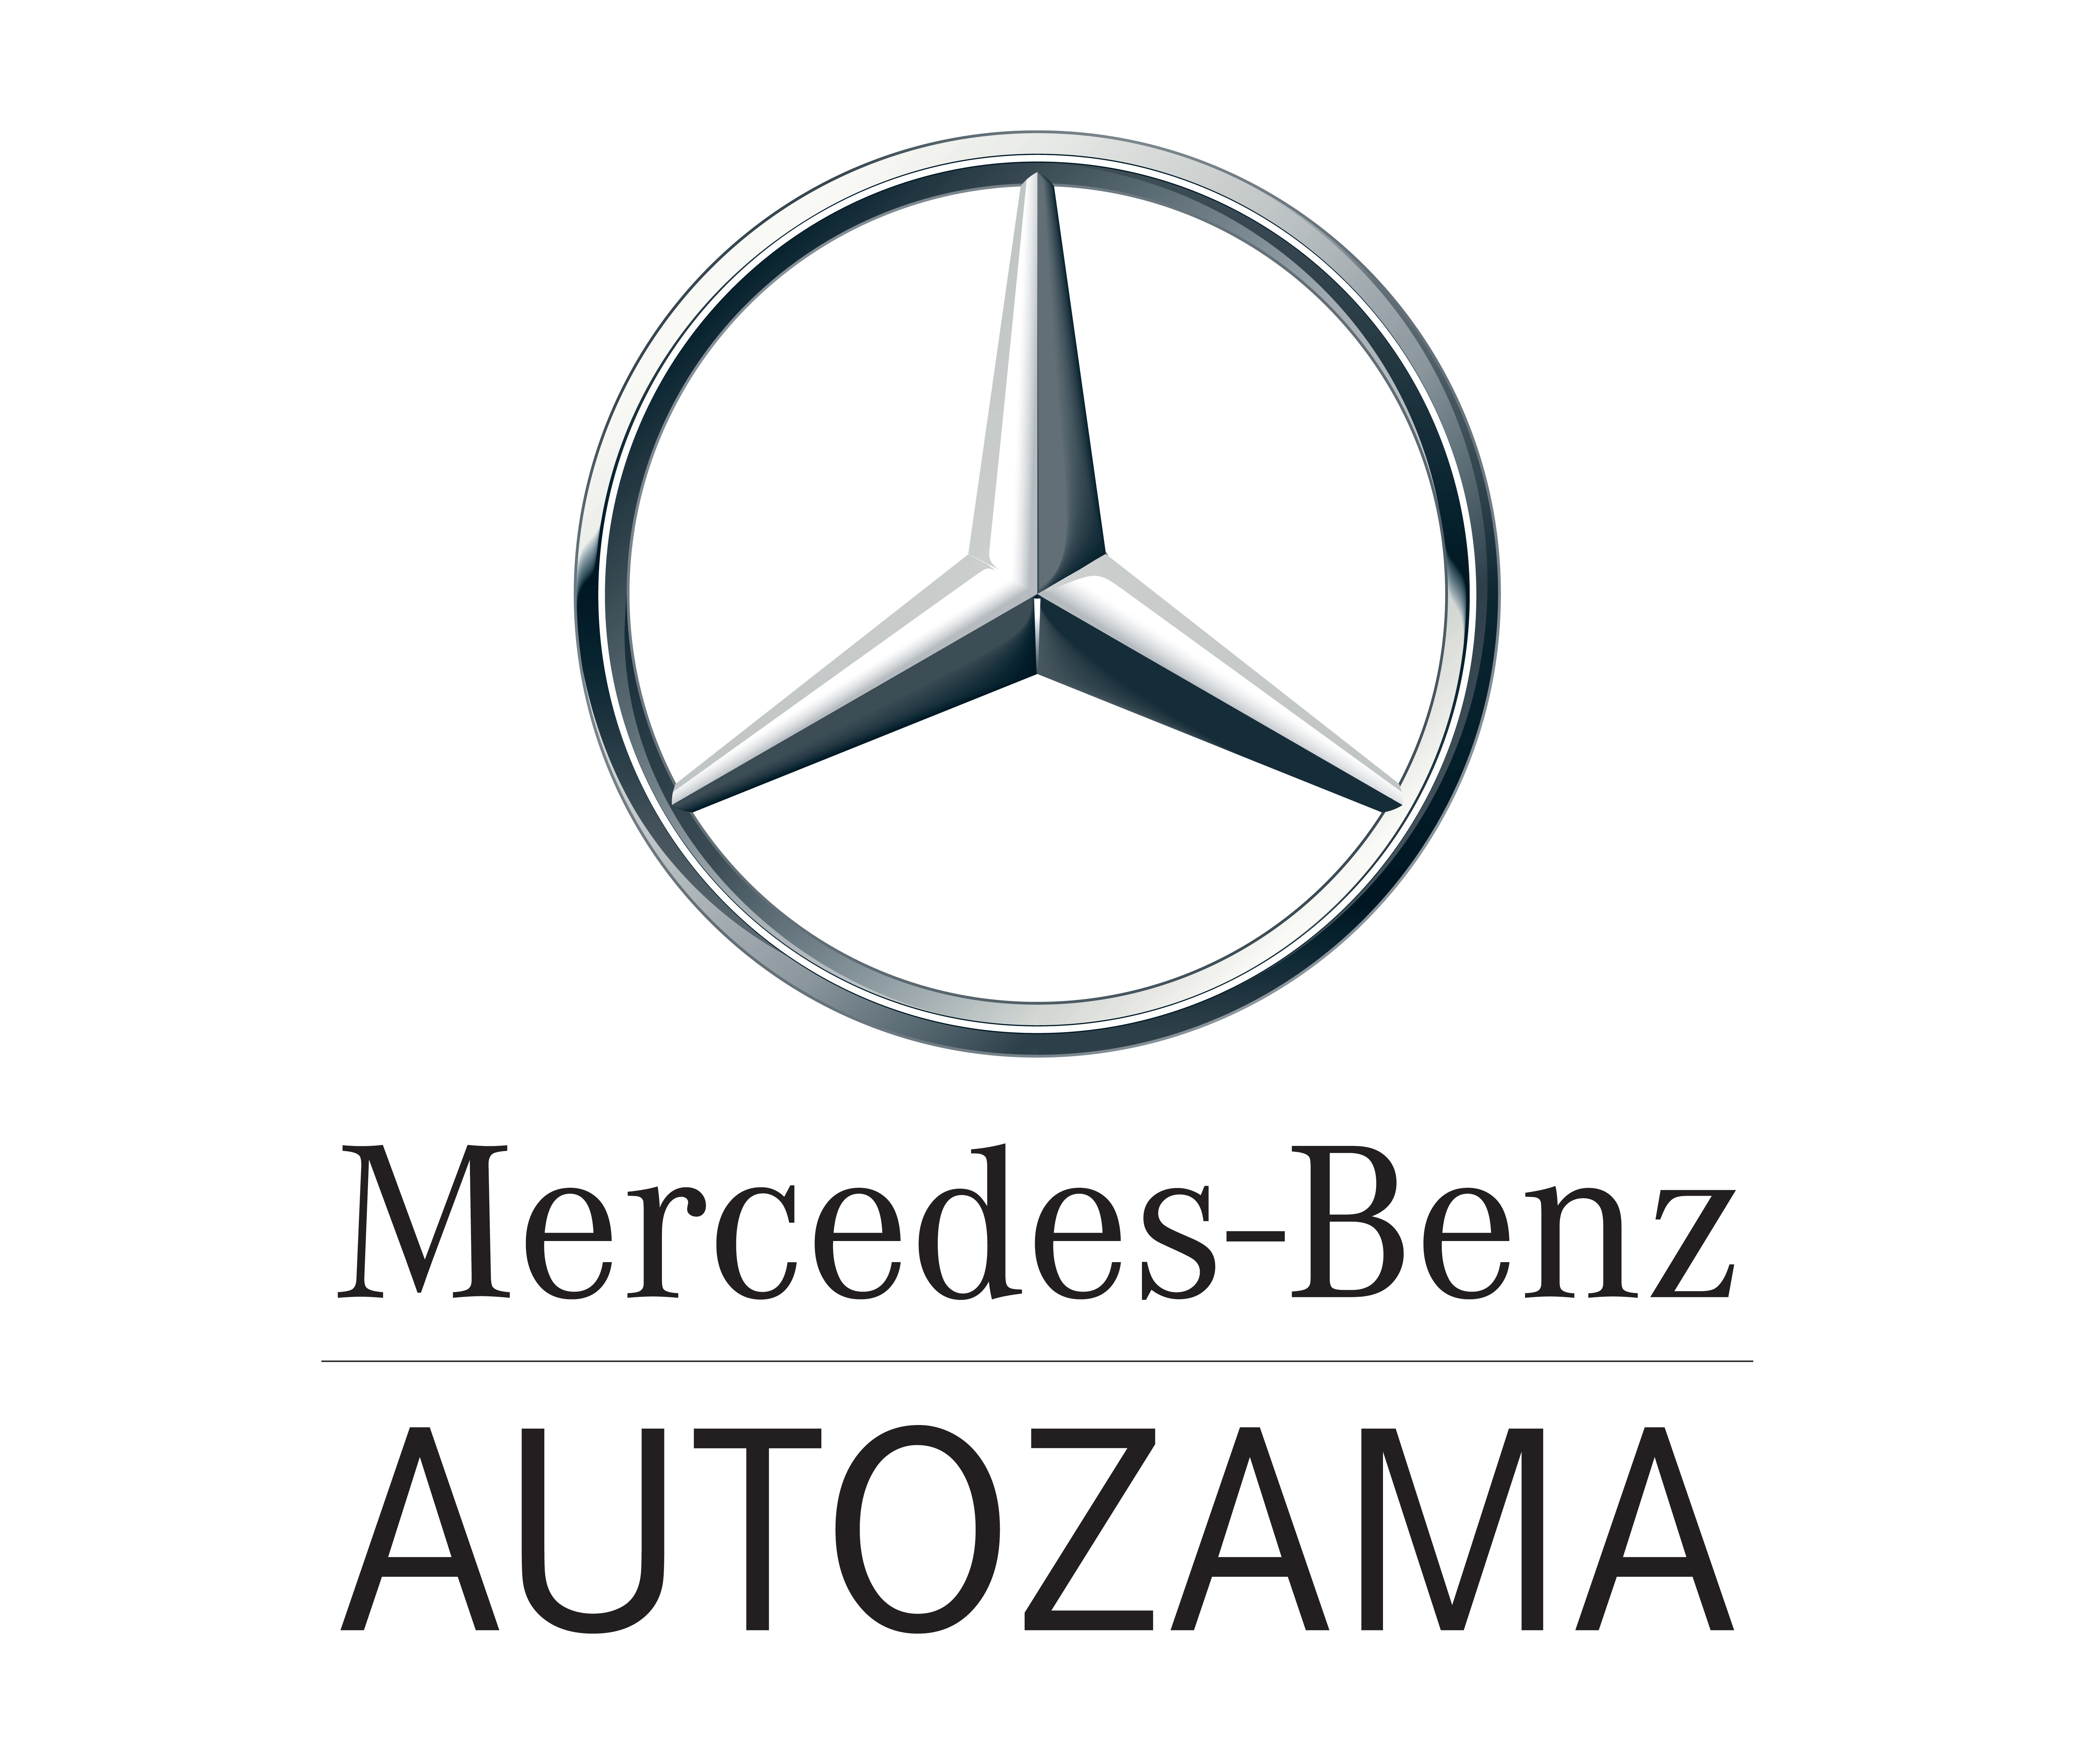 Benz логотип